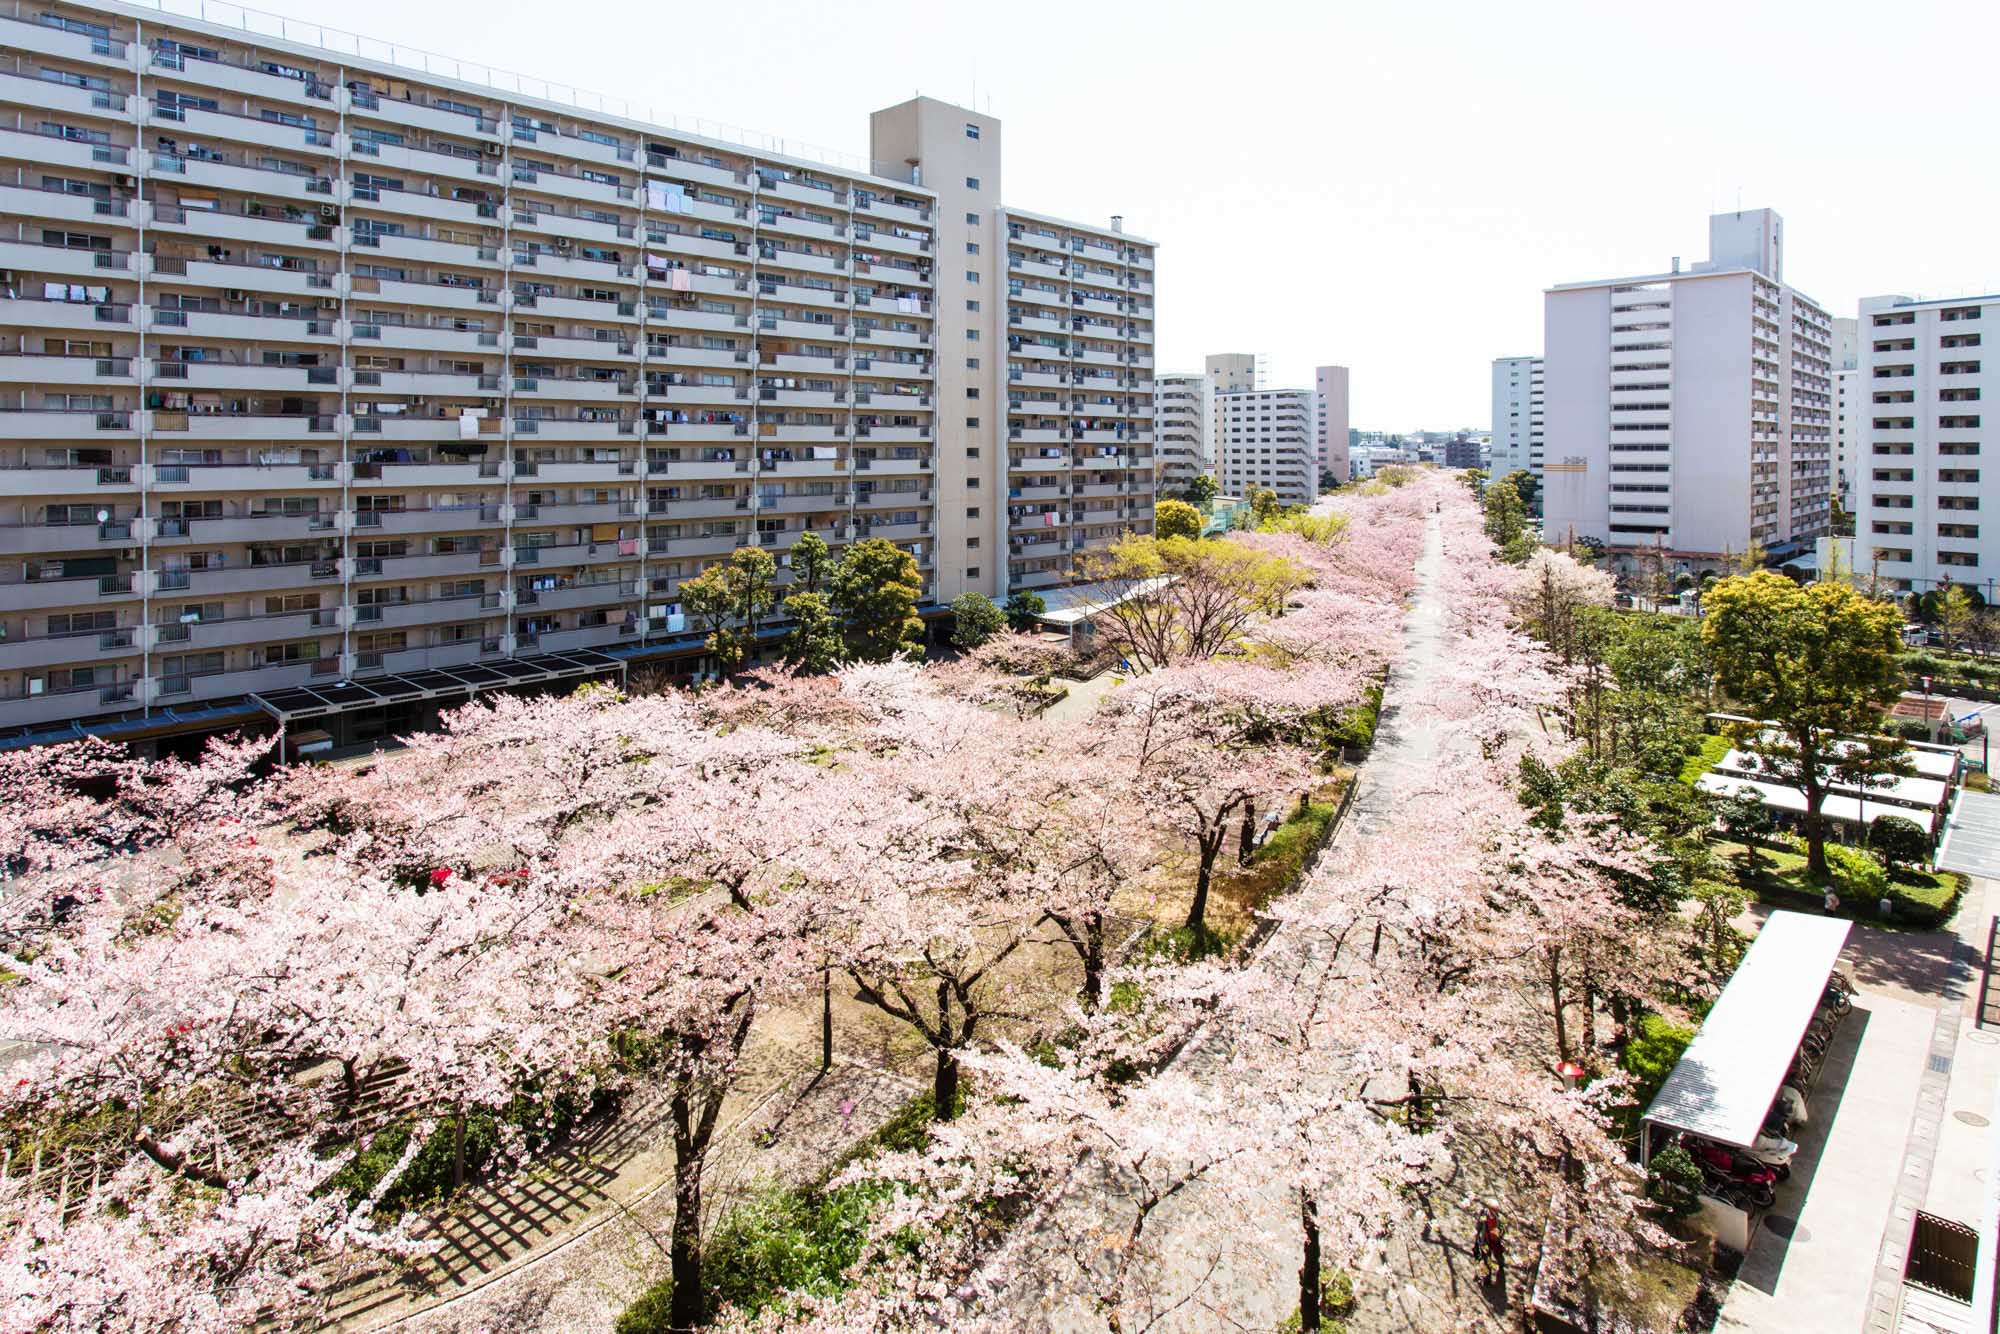 団地の敷地内には、春になるとこんなに立派に花を咲かせる桜並木もあります。満開の季節が楽しみになりますね。